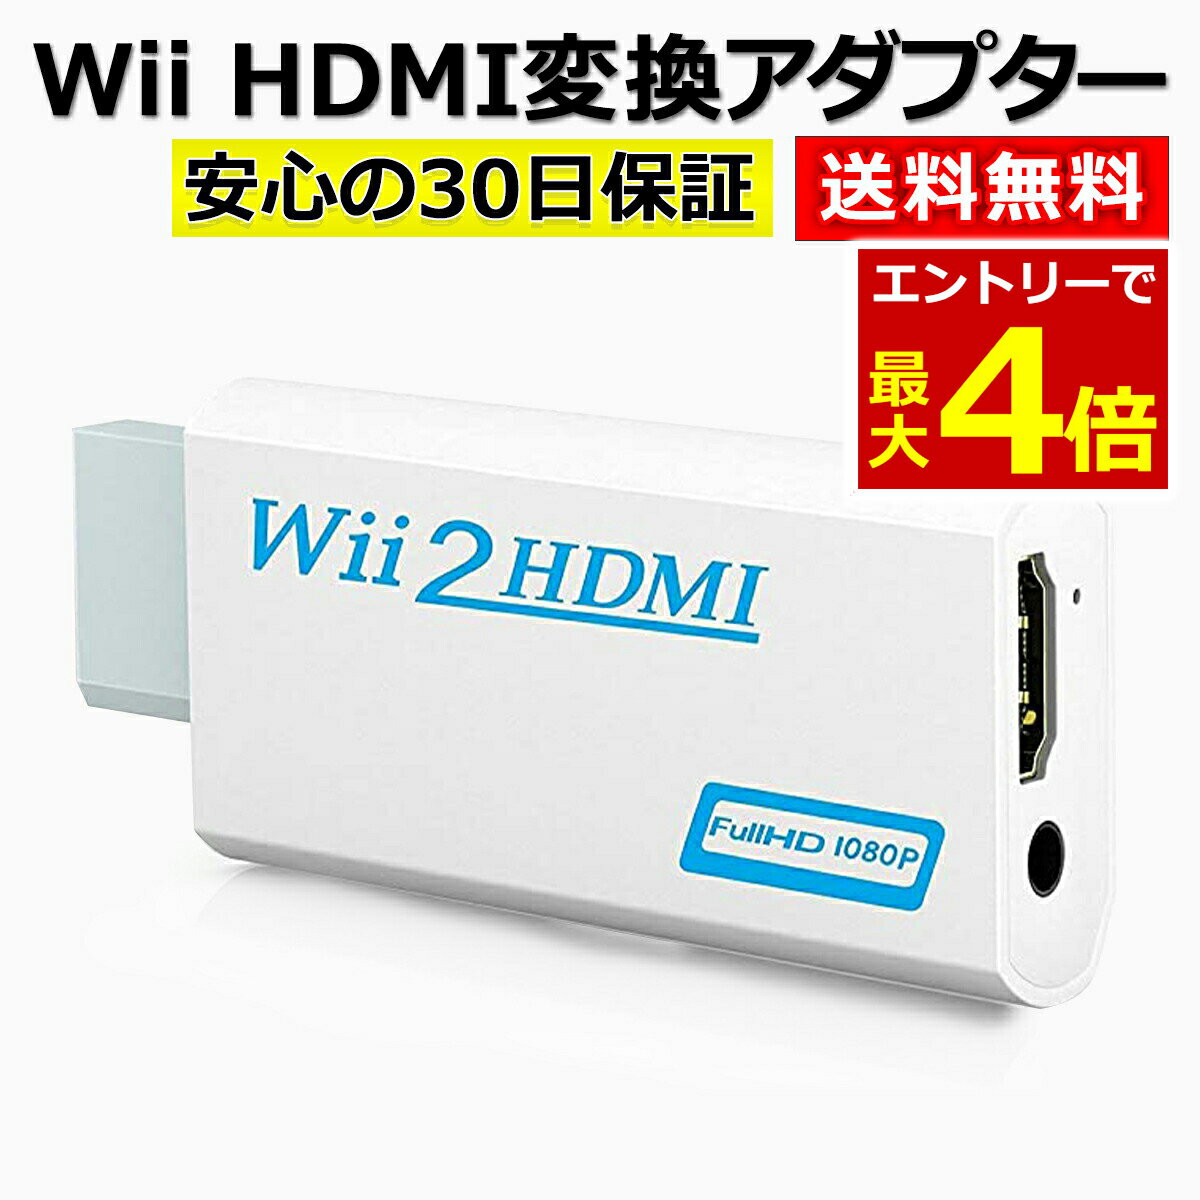 【6/6当店エントリーP最大4倍!&お買回り】Wii HDMI 変換 アダプター コンバーター HDMI接続 ウィー 任天堂 hdmi 接続 コネクター テレビ 変換アダプター